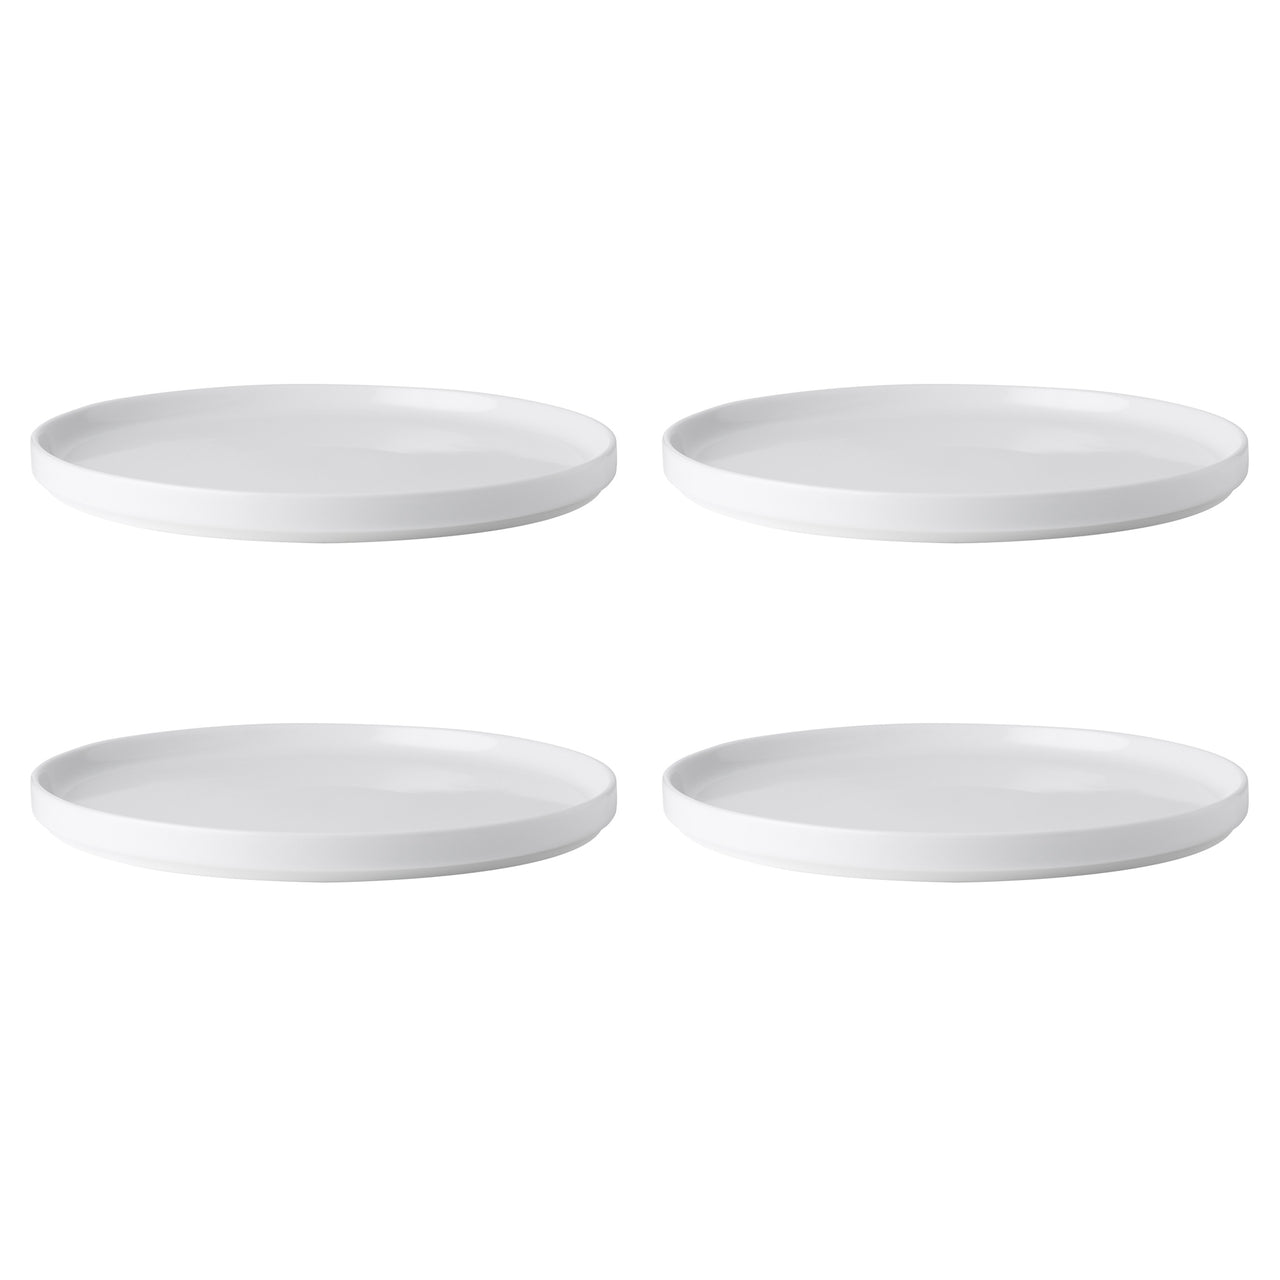 Noritake Stax 24.5cm Dinner Plates (Set of 4)